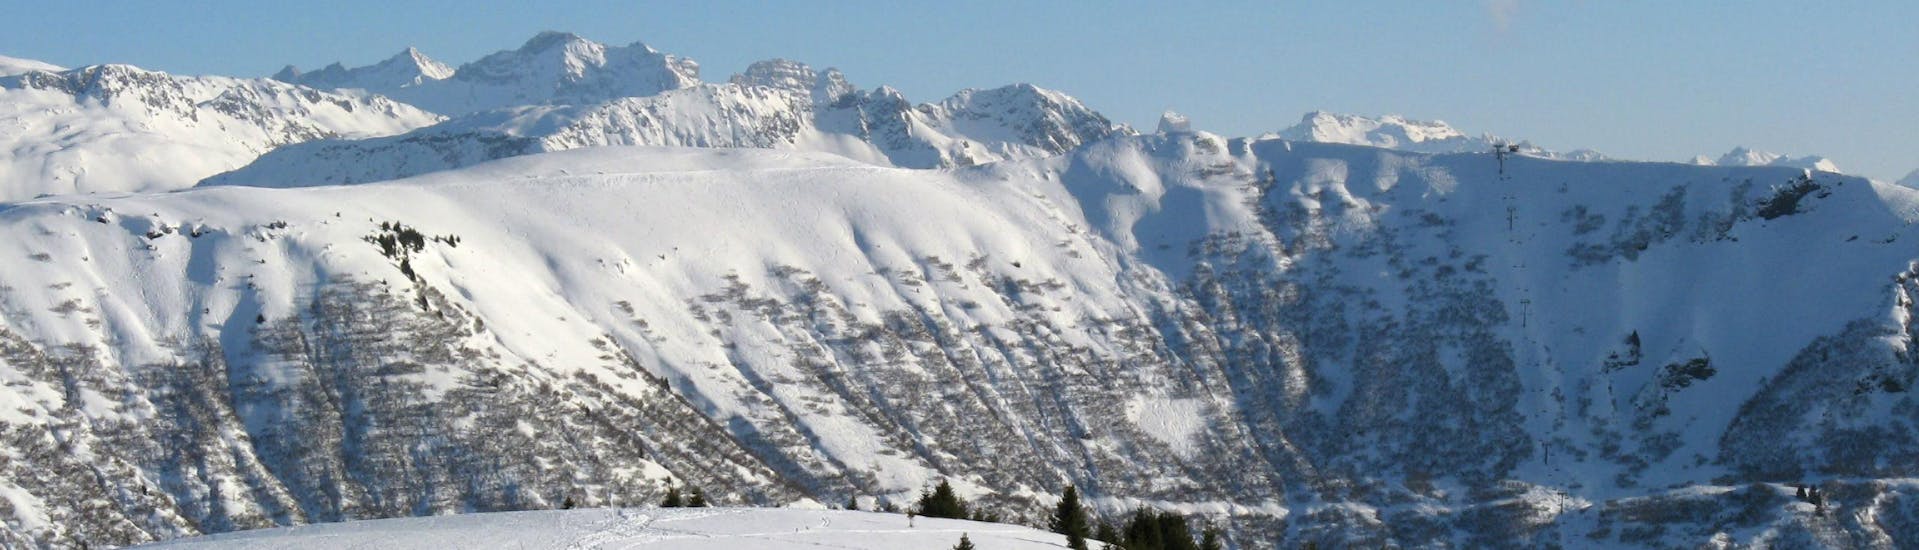 Une vue panoramique des pistes de ski de Flumet, une station de ski française nichée entre les majestueux sommets du département de la Savoie, où les écoles de ski locales offrent un large choix de cours de ski.